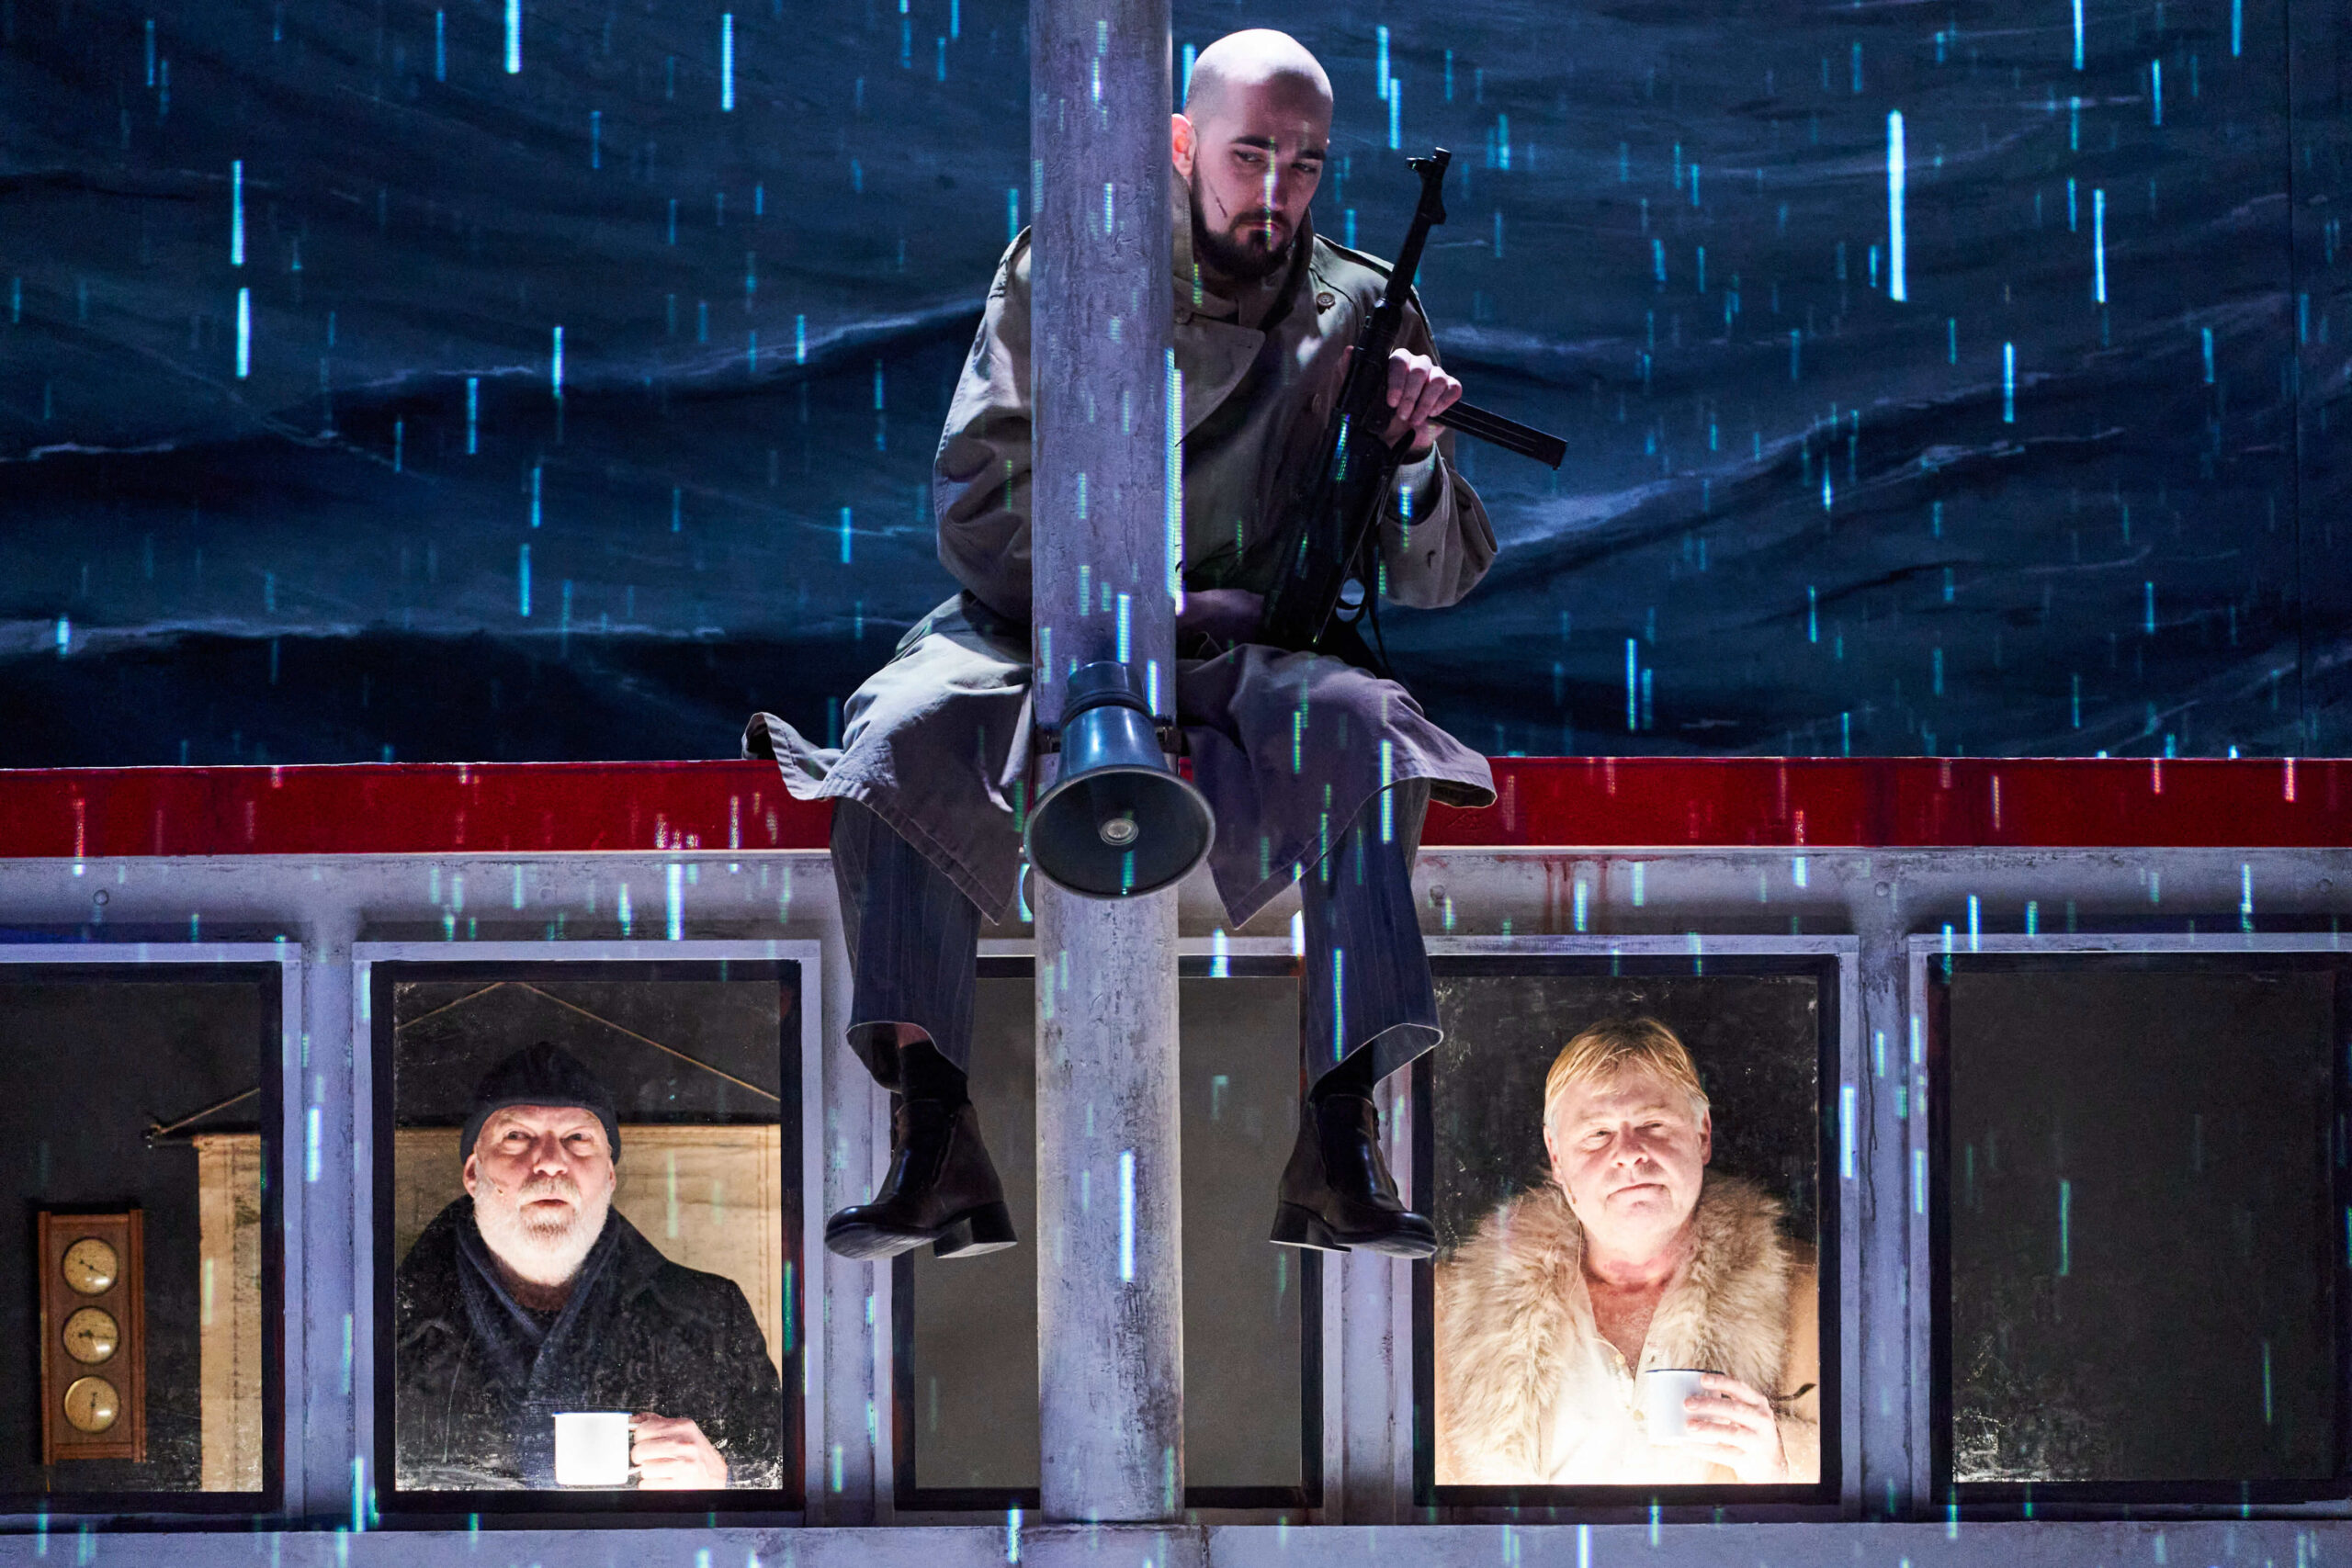 Das Bühnenbild ist ein Schiff, man sieht zwei Männer auf der Brücke, auf dem Dach sitzt im Regen ein Gangster mit Waffe